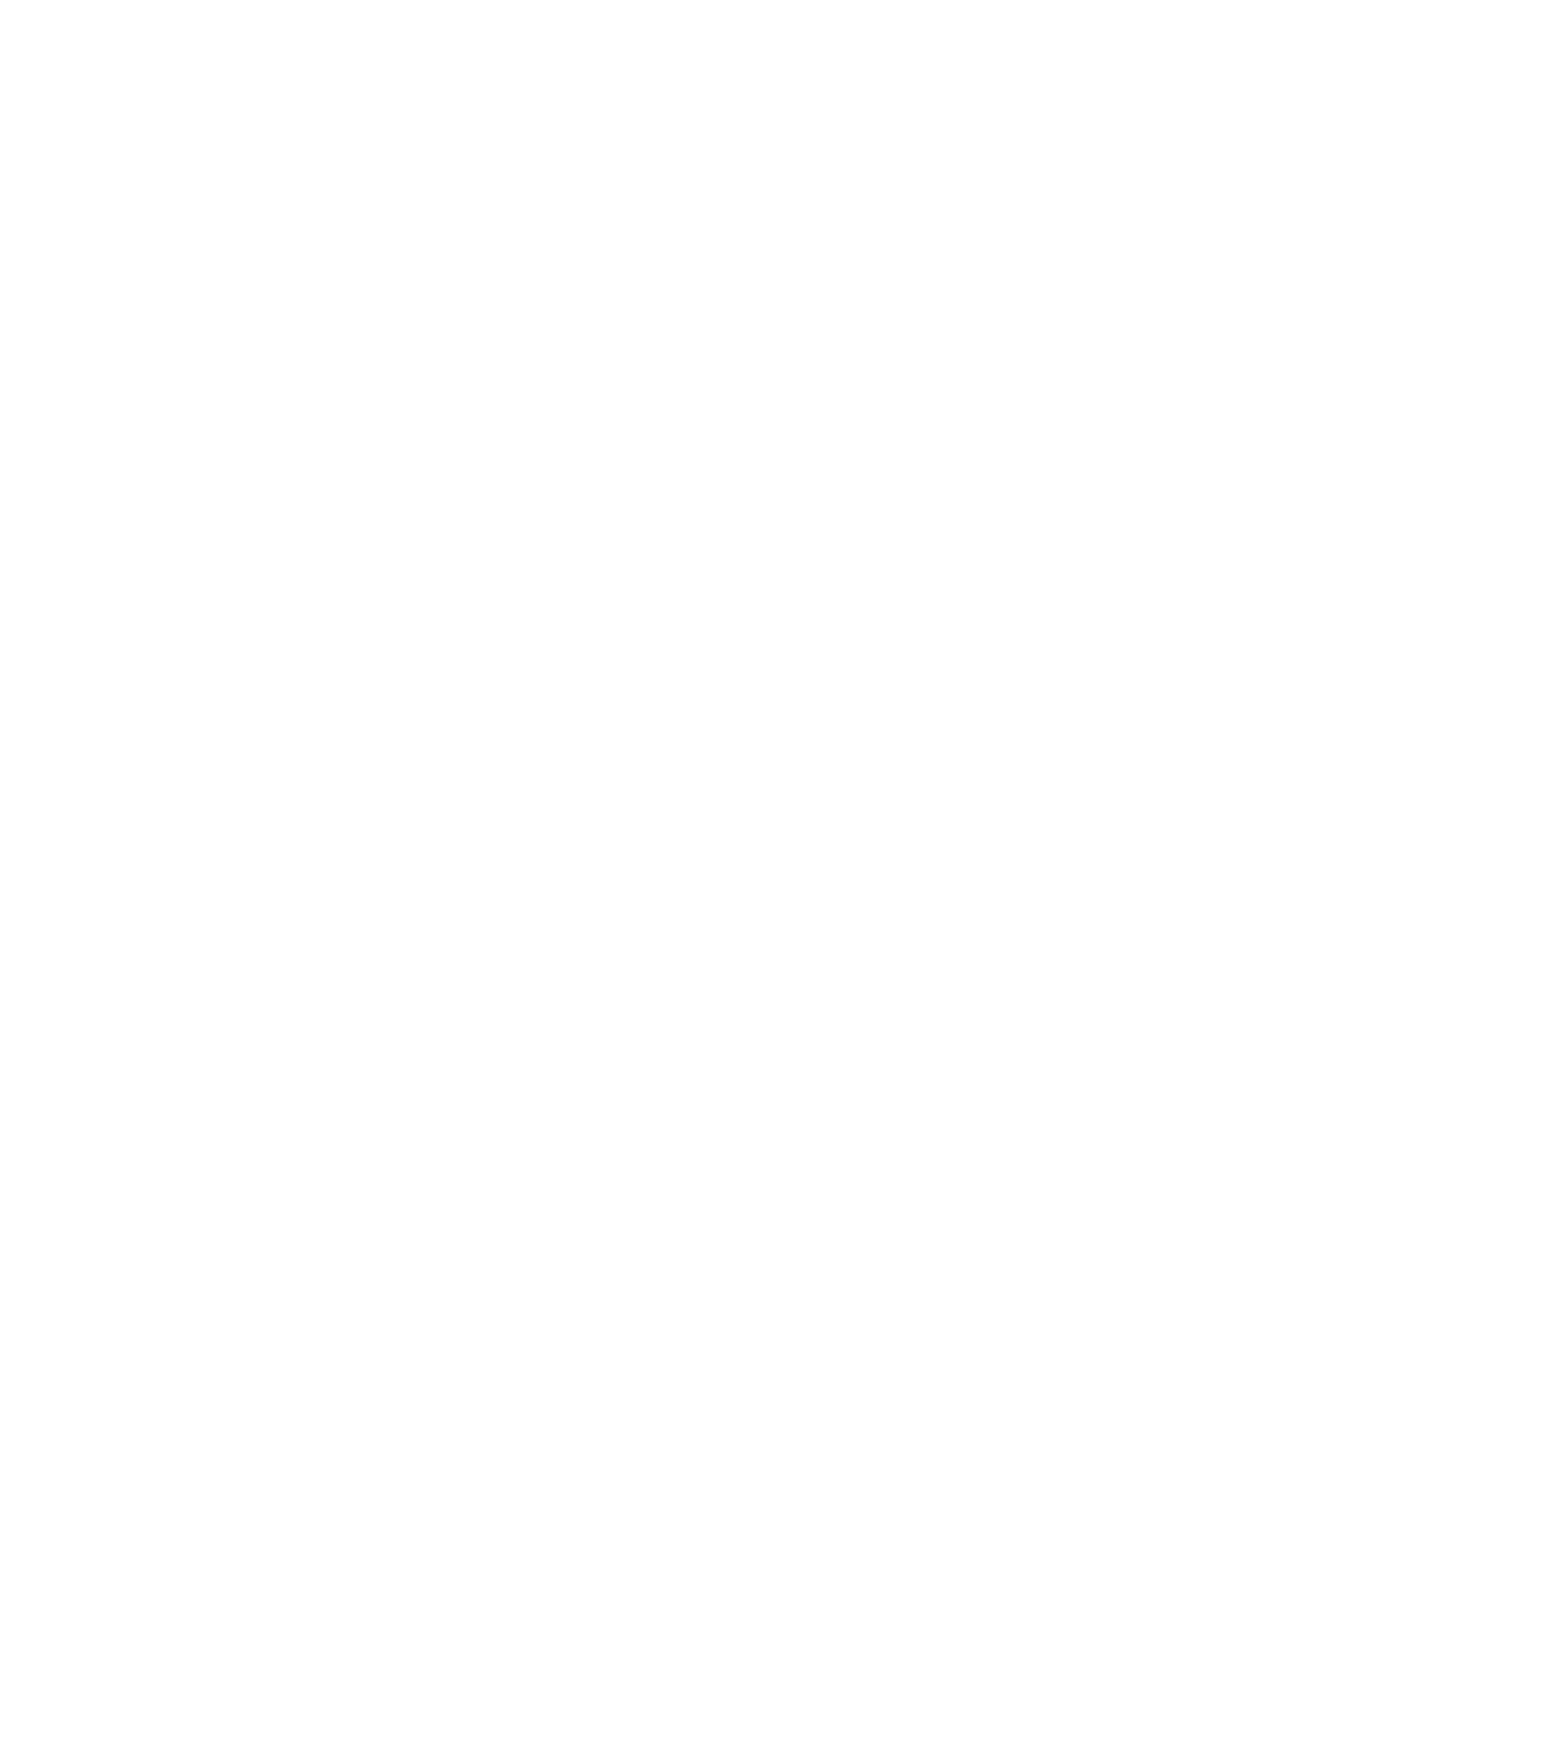 Commvault logo for dark backgrounds (transparent PNG)